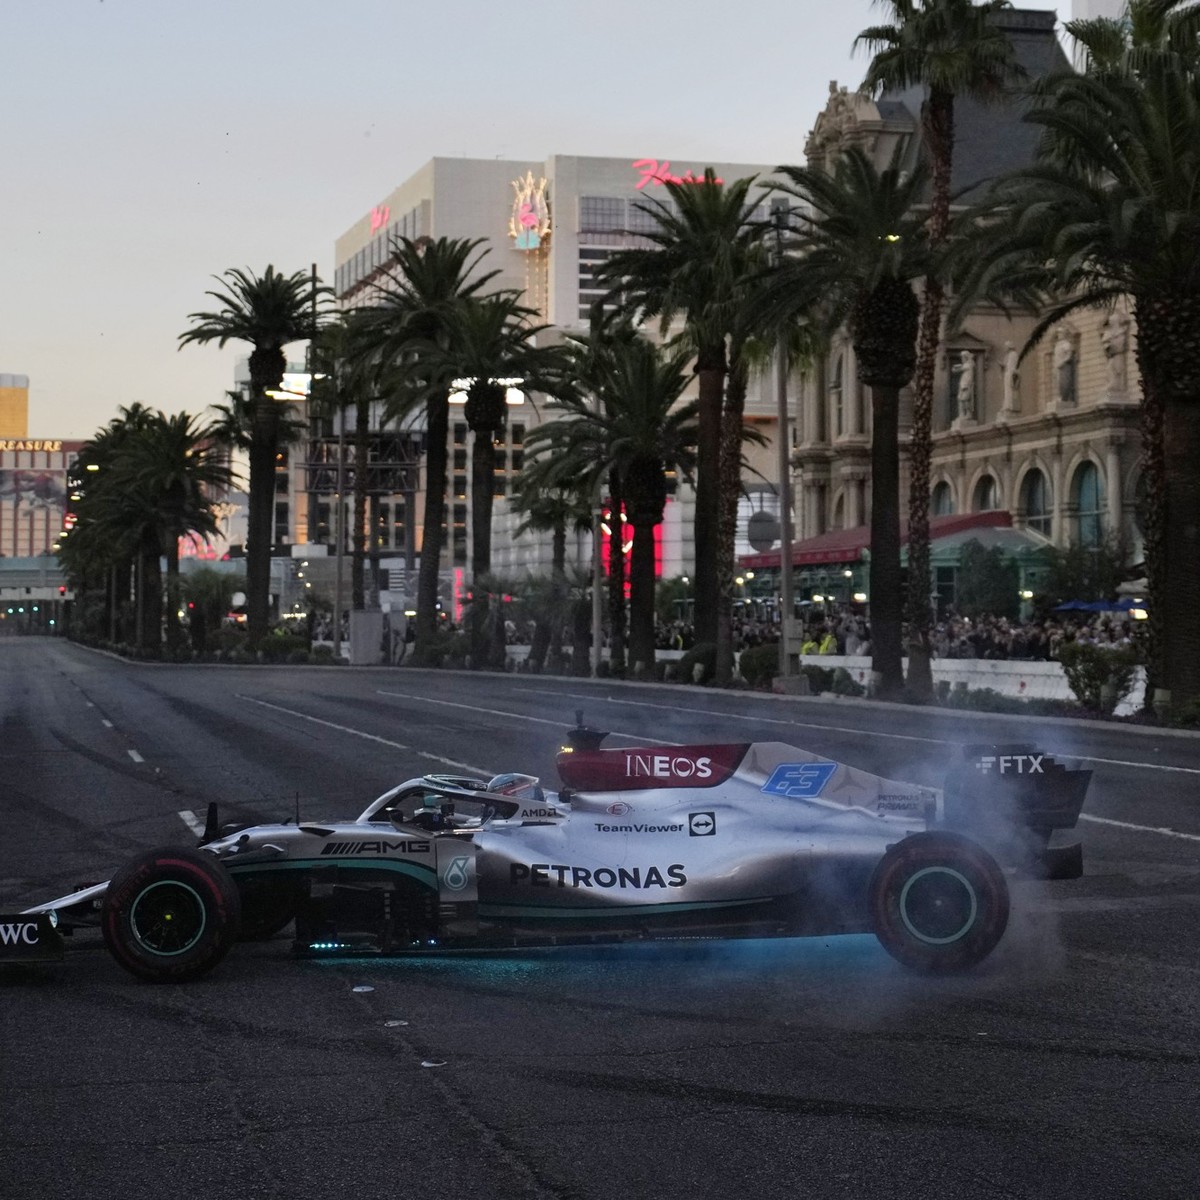 Formel 1 in Las Vegas Welchen irren Luxus sich Fans und Stars gönnen können